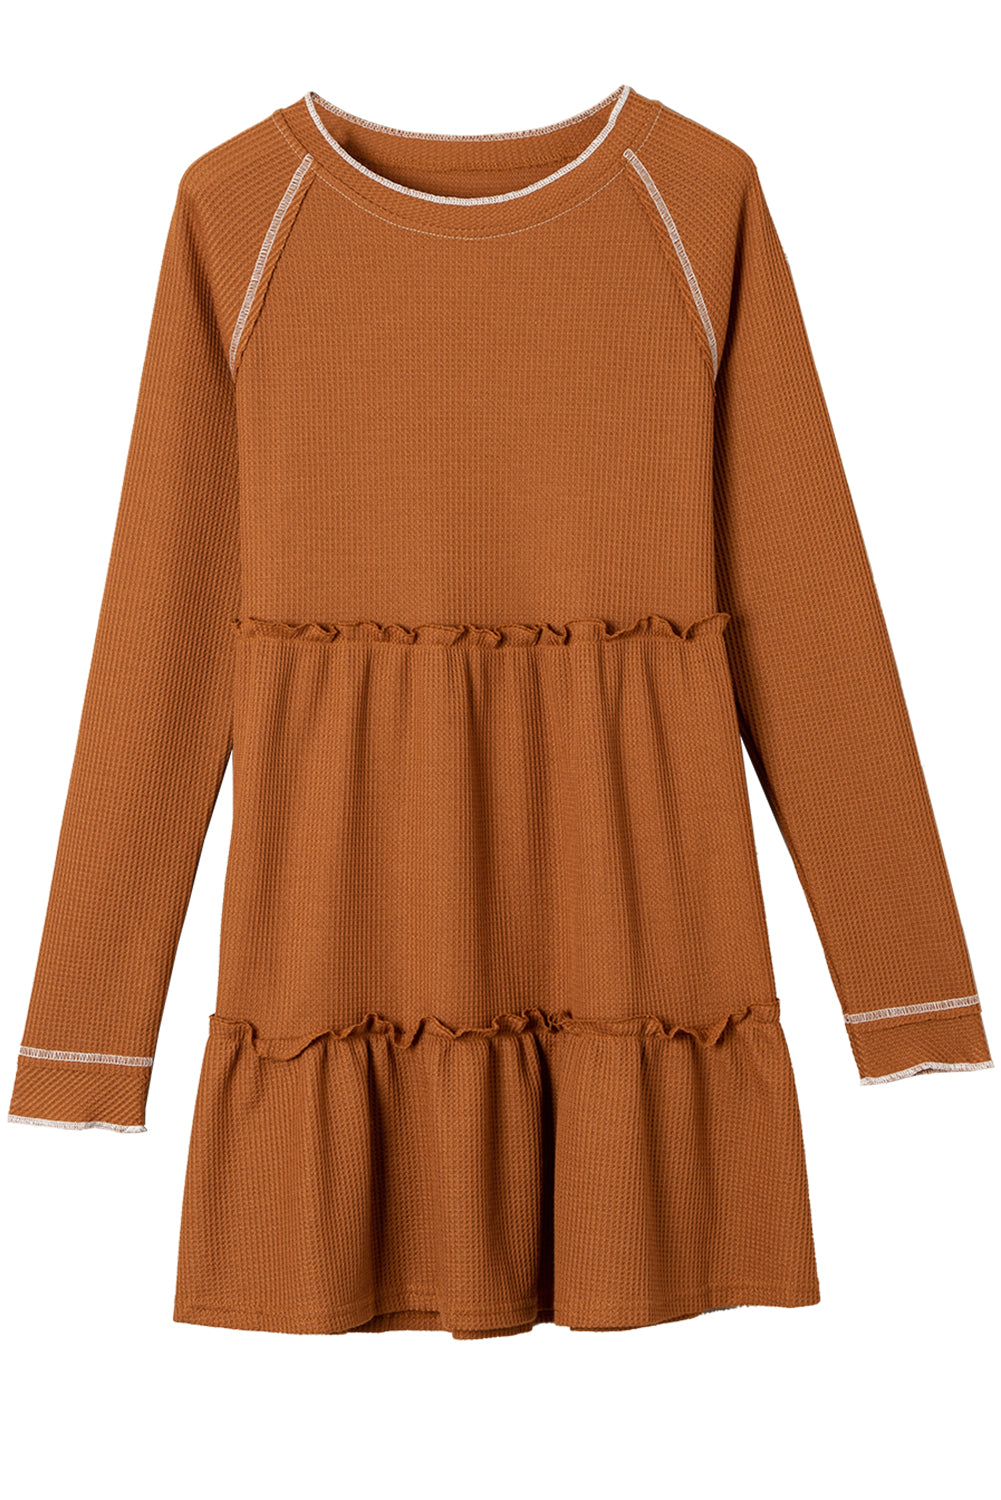 Mini haljina s dugim rukavima s teksturom kestena u više razina i naborima